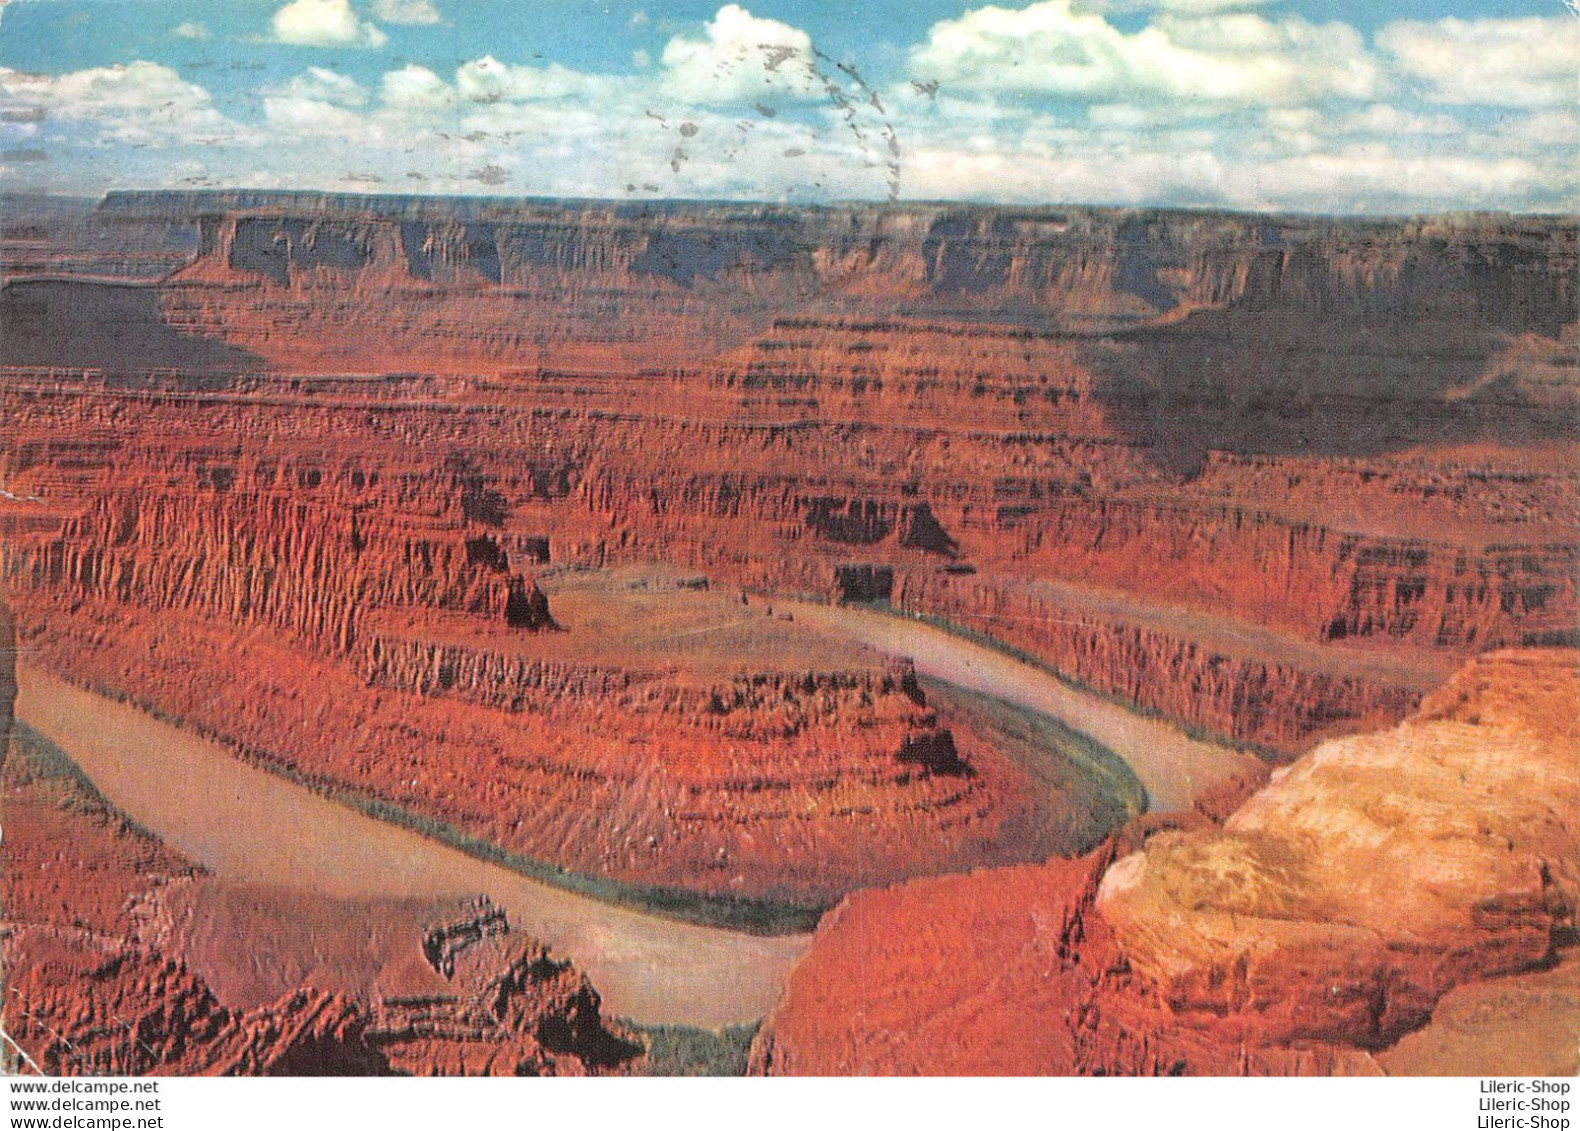 AMORA Prospection - U.S.A. Canon Du Colorado Pointe Du Cheval Mort  Timbrée, Oblitérée 1963 - Publicité